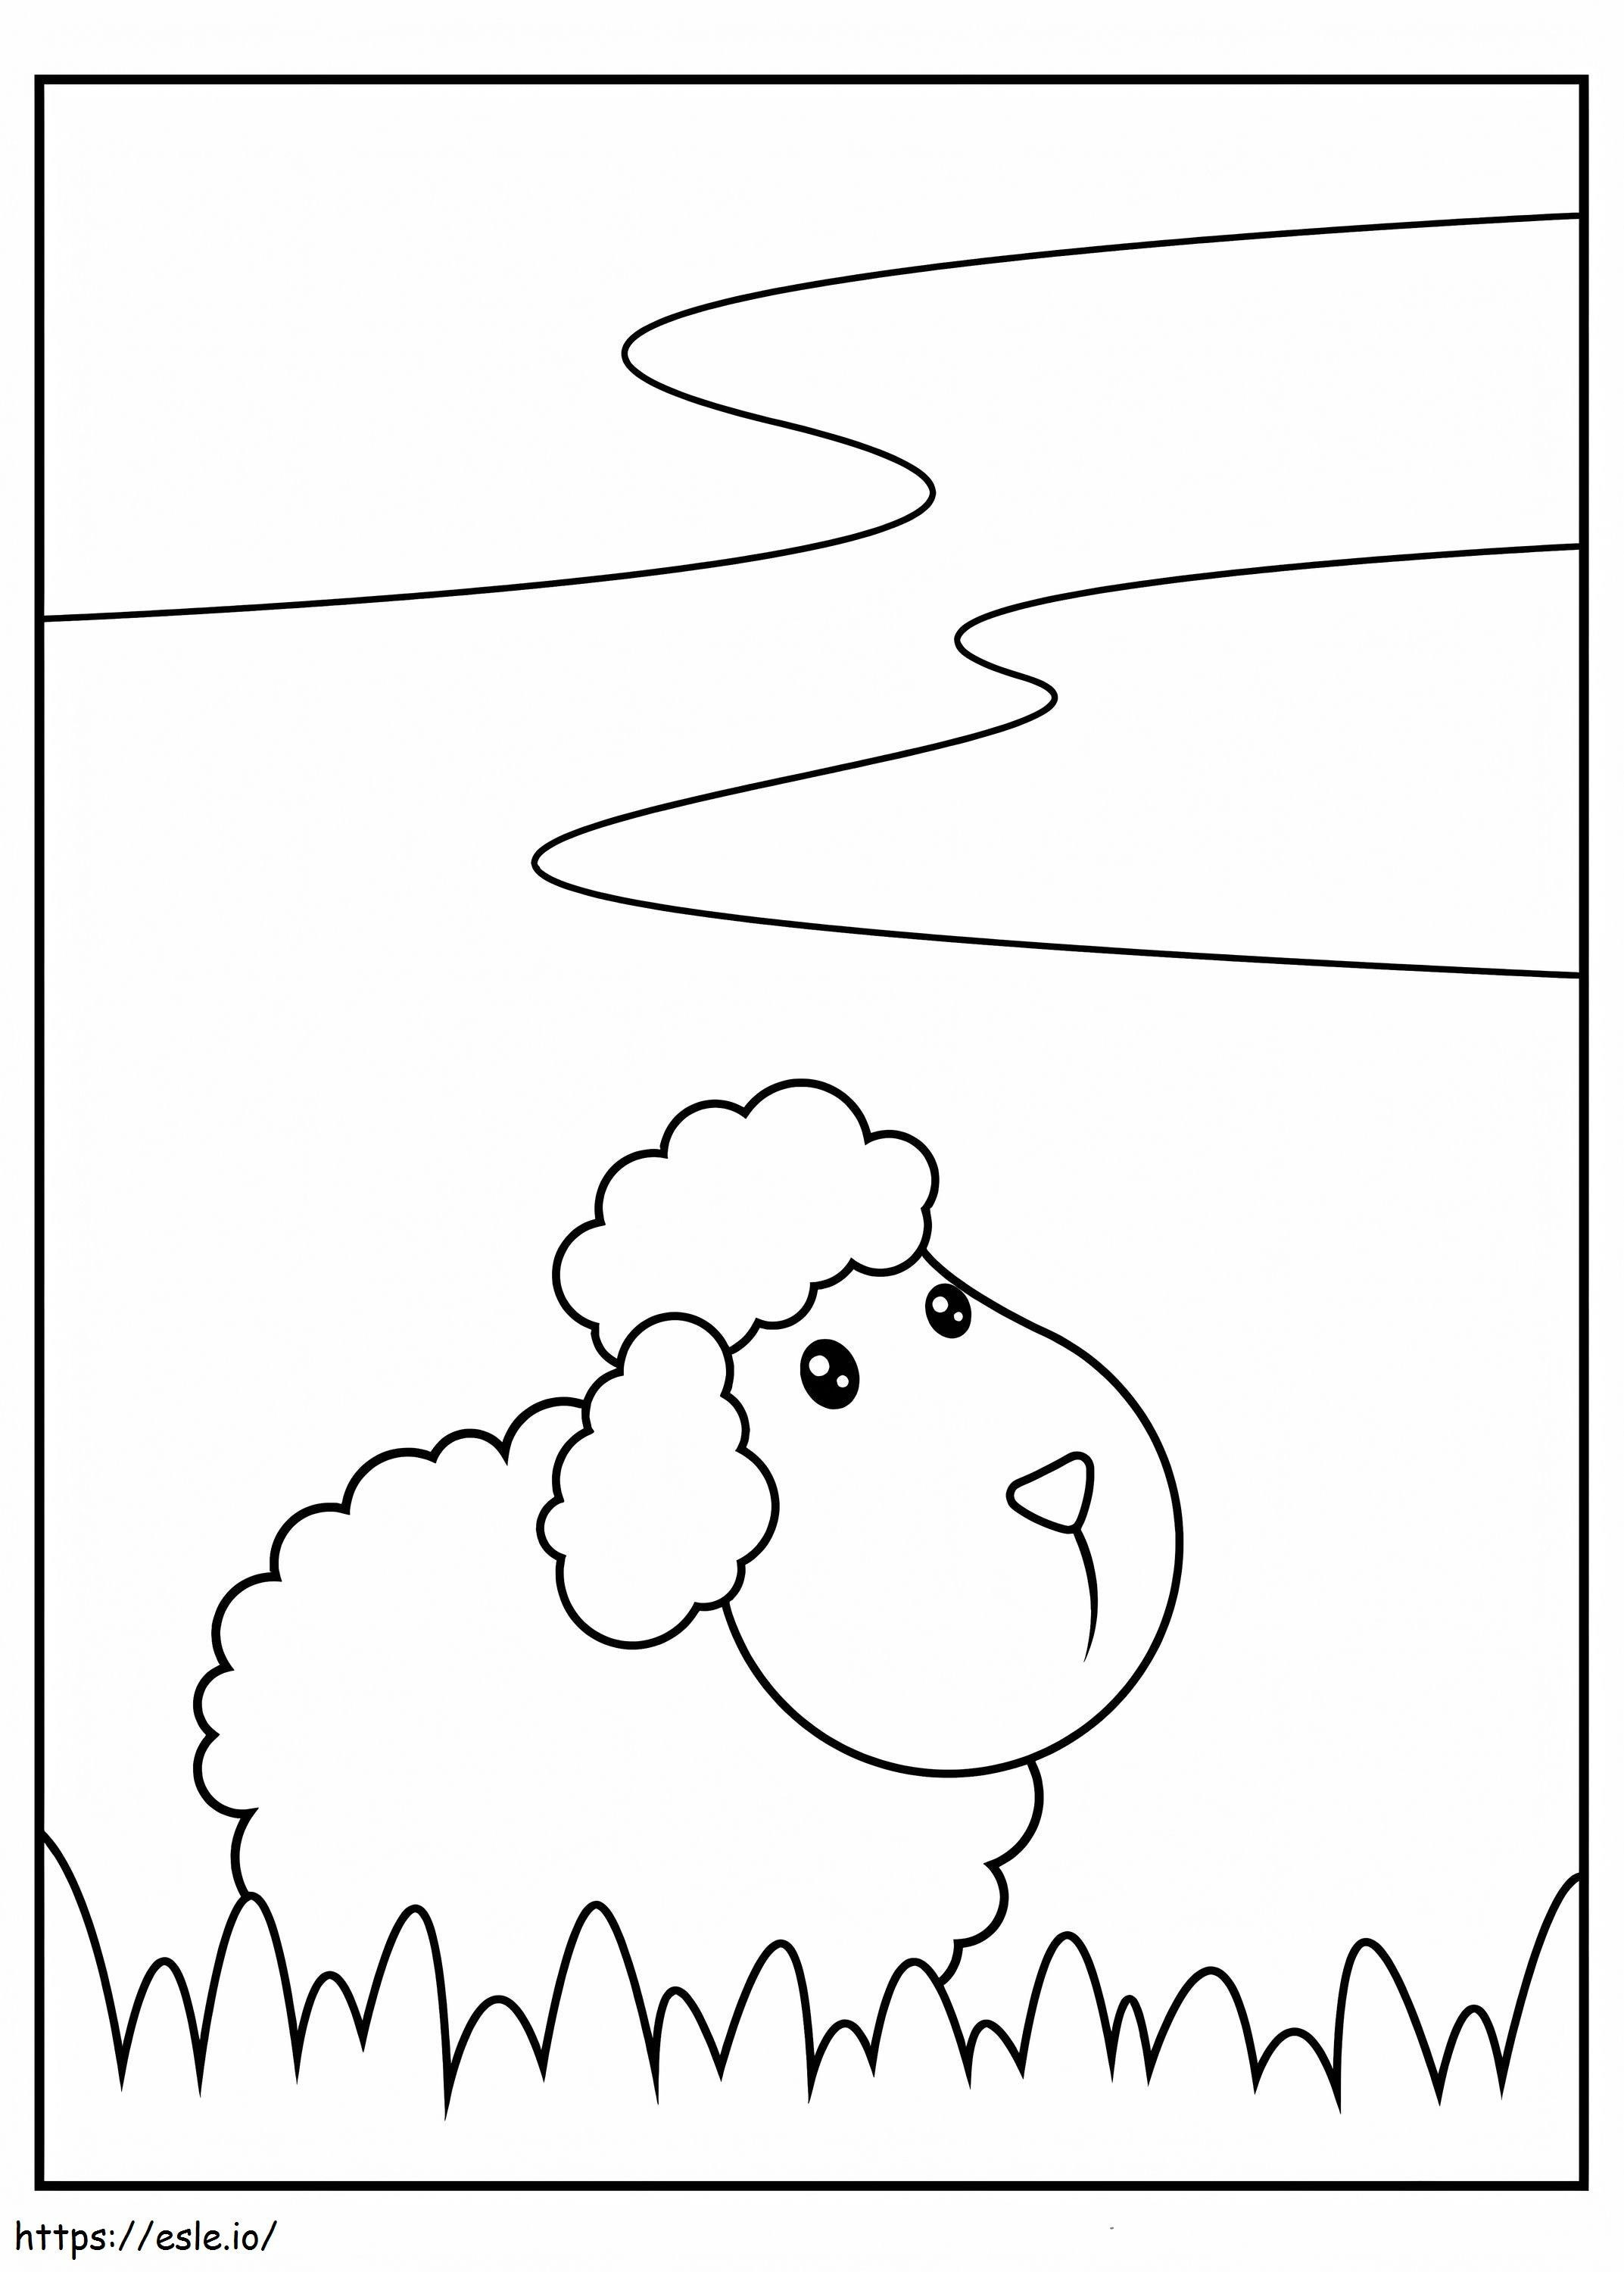 Linda oveja con hierba para colorear